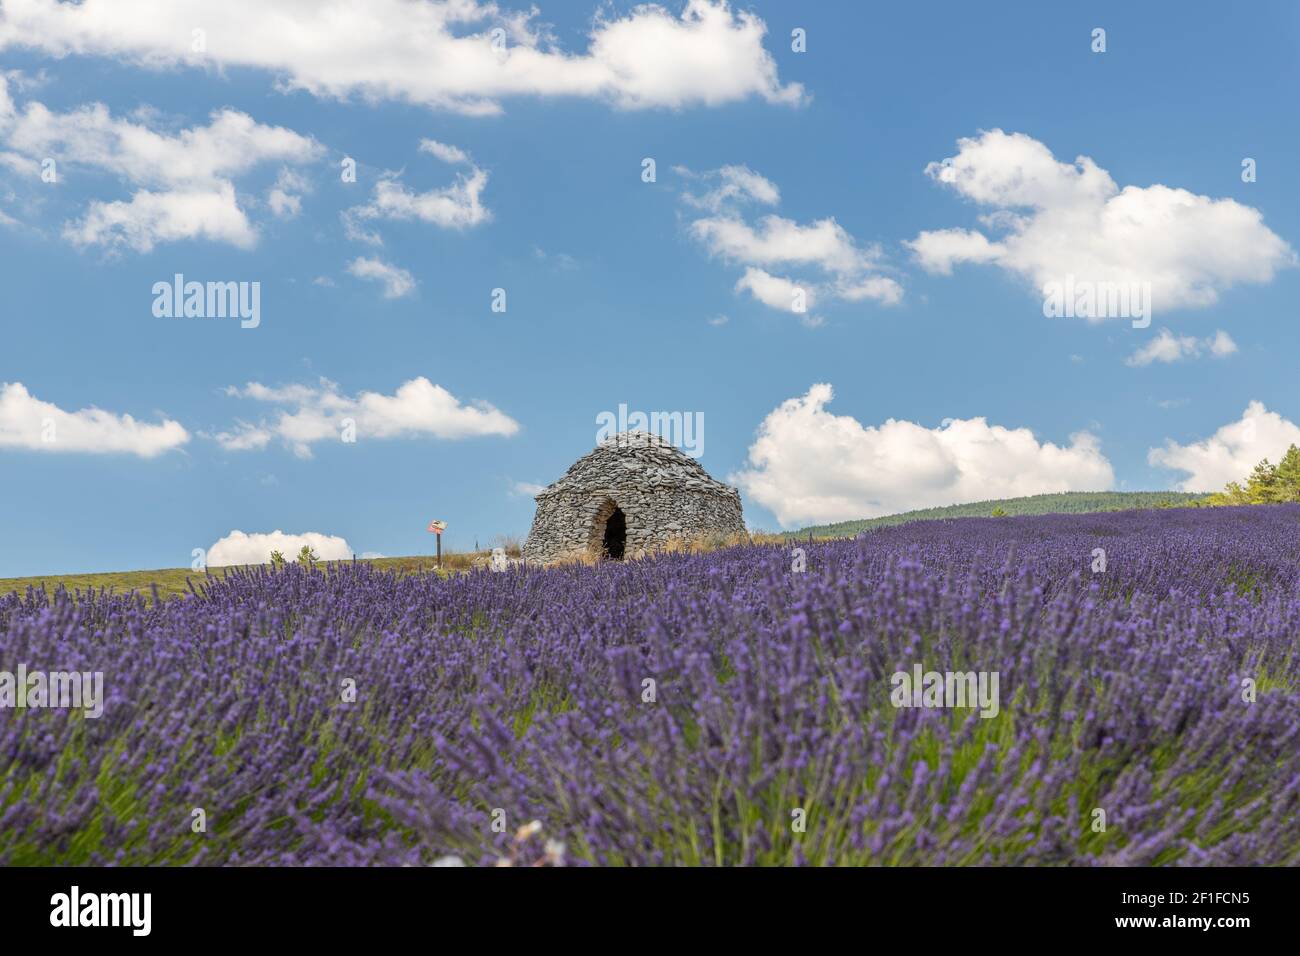 Maison ronde en pierre dans les champs de lavande en provence en France, Europe Banque D'Images